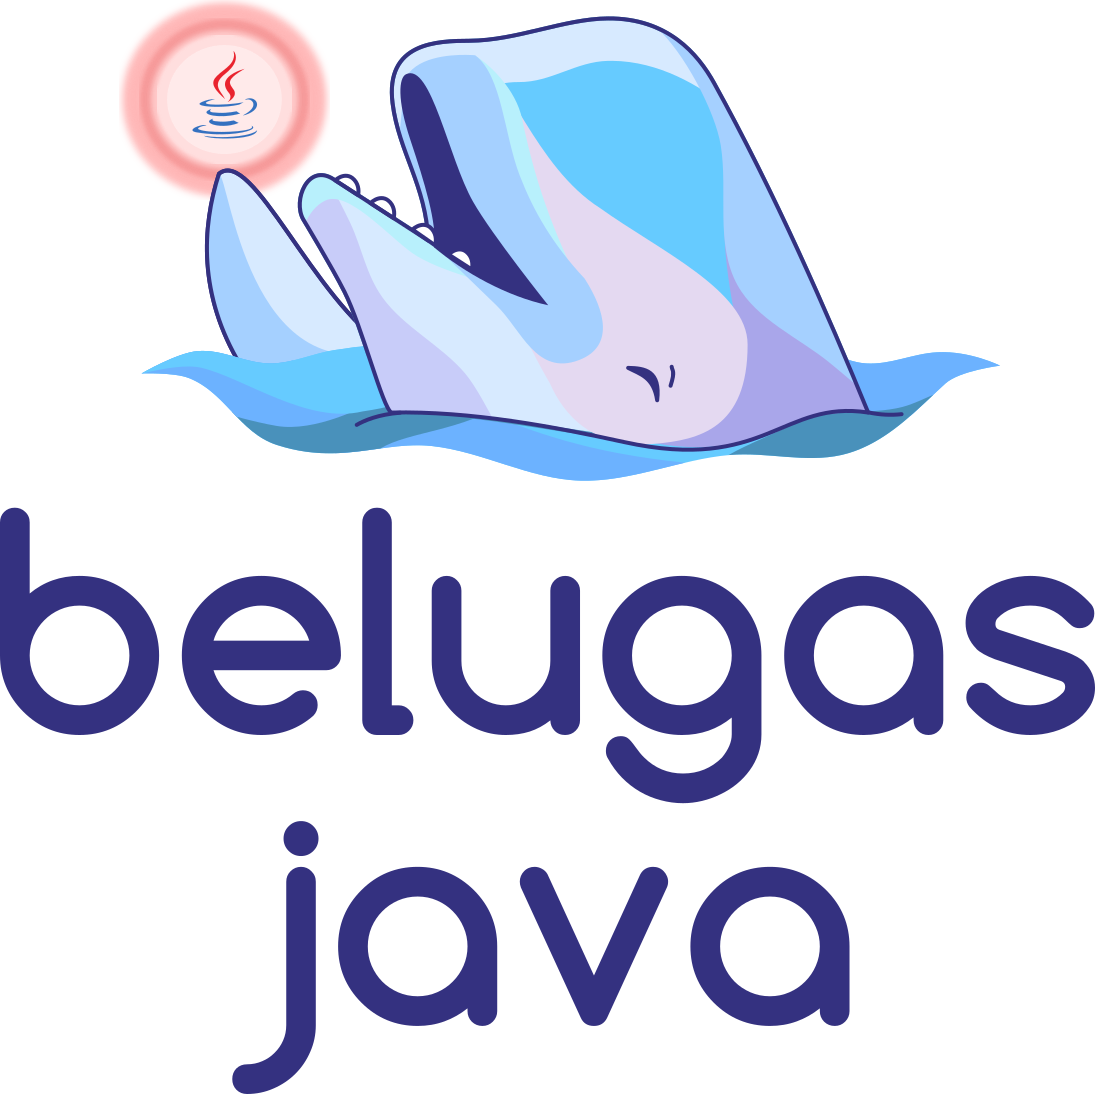 Belugas Java